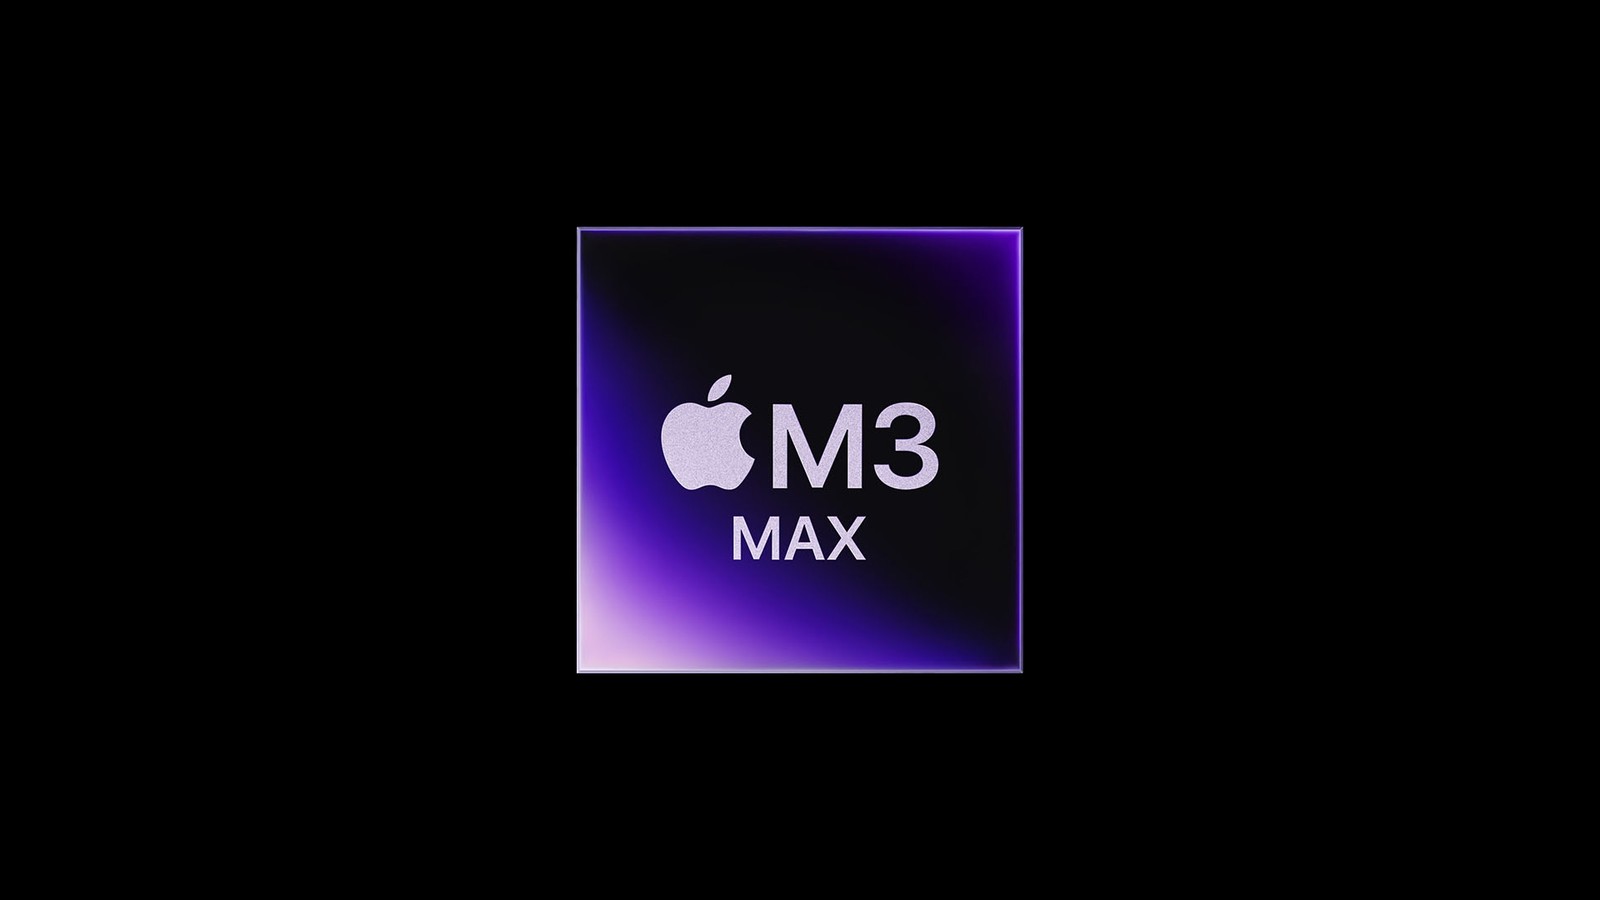 Czy Apple M3 Max jest potężny? Porównanie z M2 Ultra zdradza prawdę